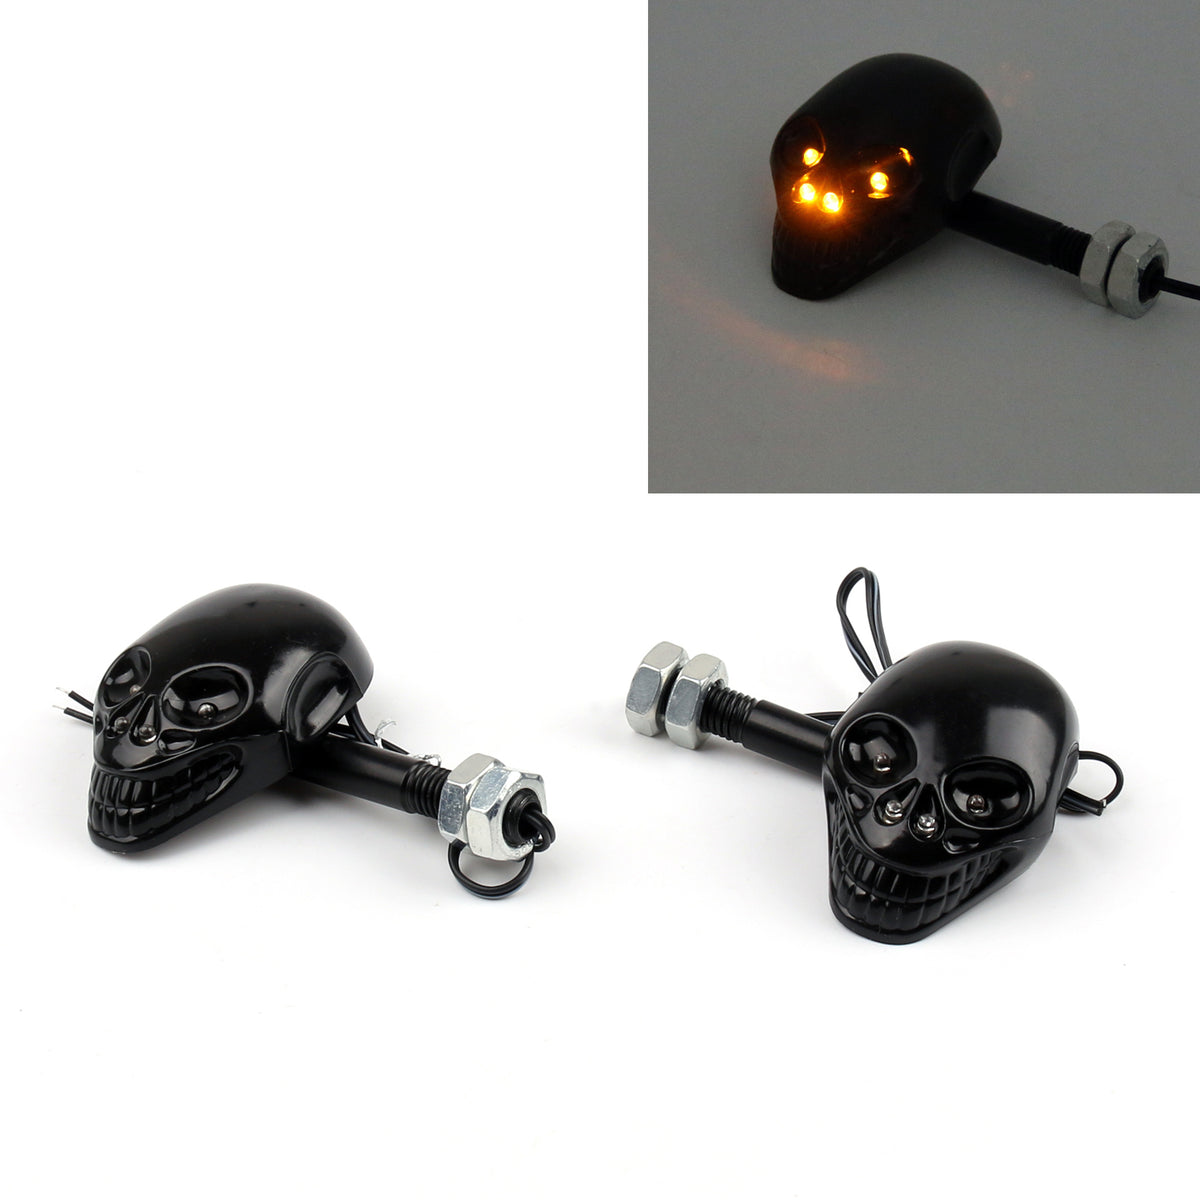 Motorcycle Skull Head Turn Signal Indicator Blinker 12V LED Light Lamp